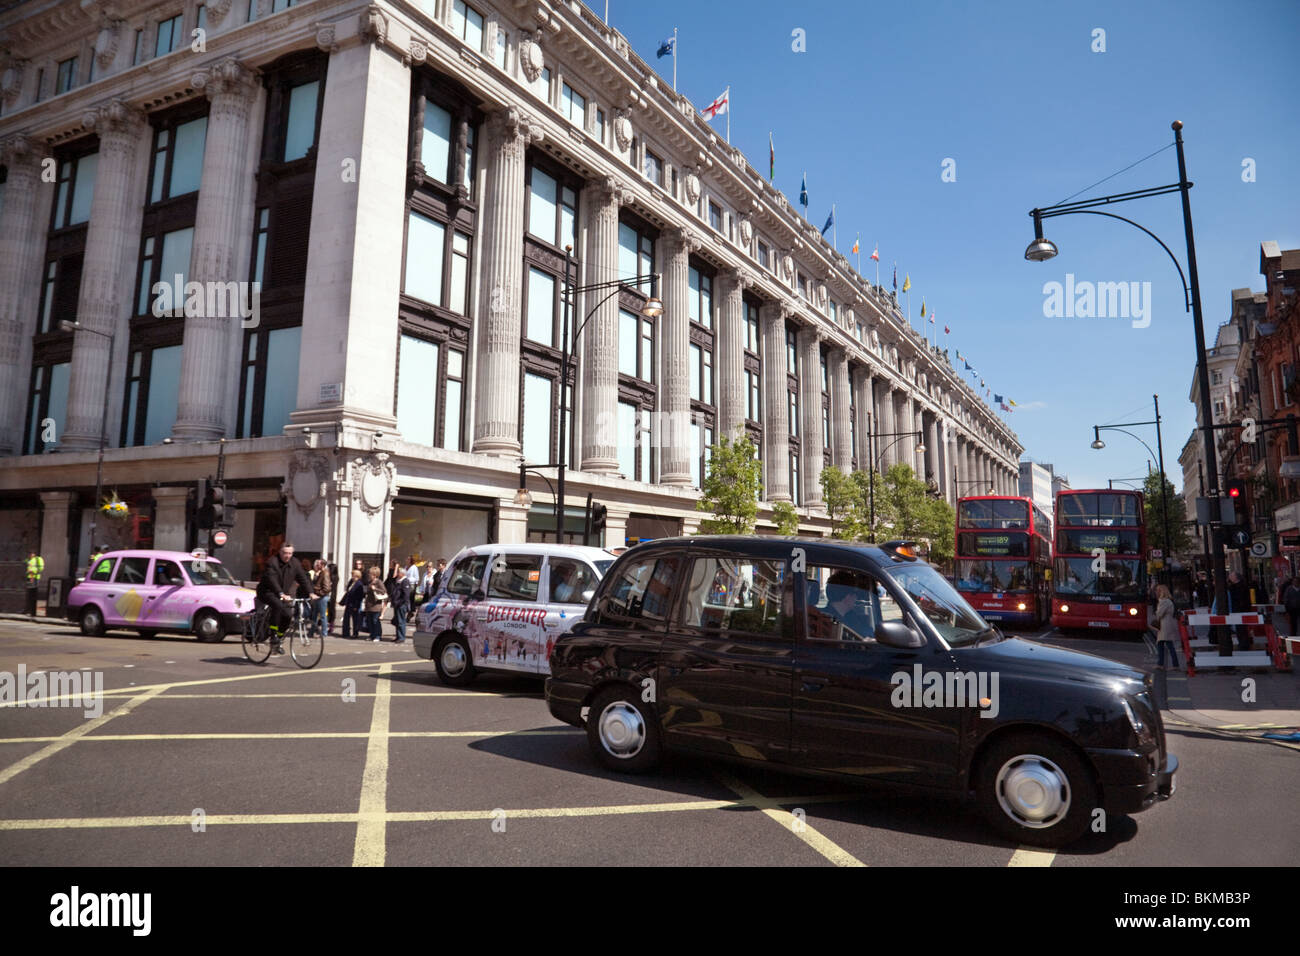 Les taxis de Londres à l'extérieur du magasin Selfridges, Oxford Street, London UK Banque D'Images